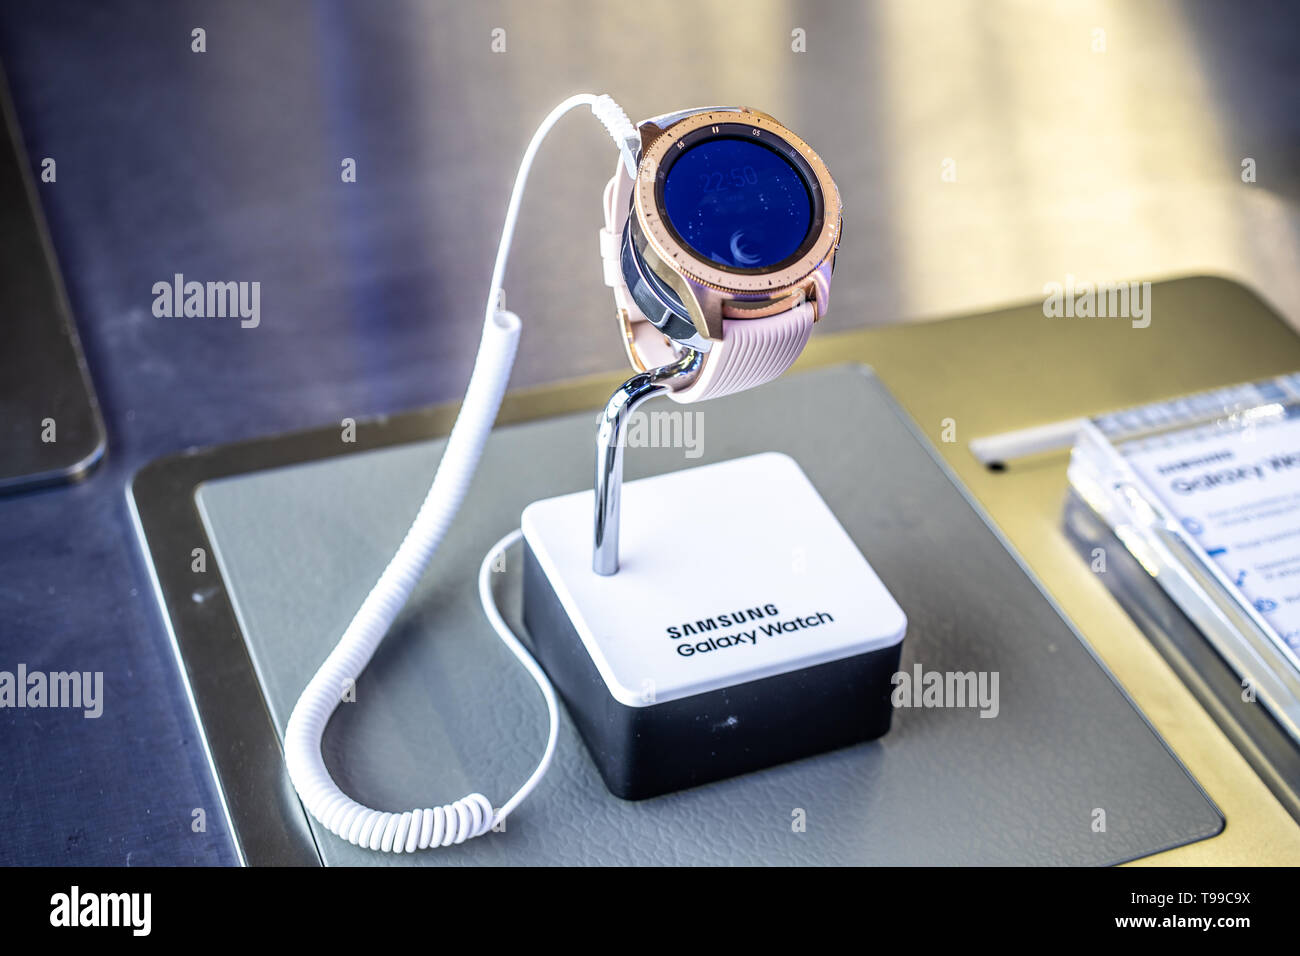 Corato, Polen, 10. Mai 2019: Samsung Galaxy Watch Smartwatch auf Anzeige, bei Samsung Ausstellungspavillon Showroom, stand an der Warschauer Electronics Show Stockfoto